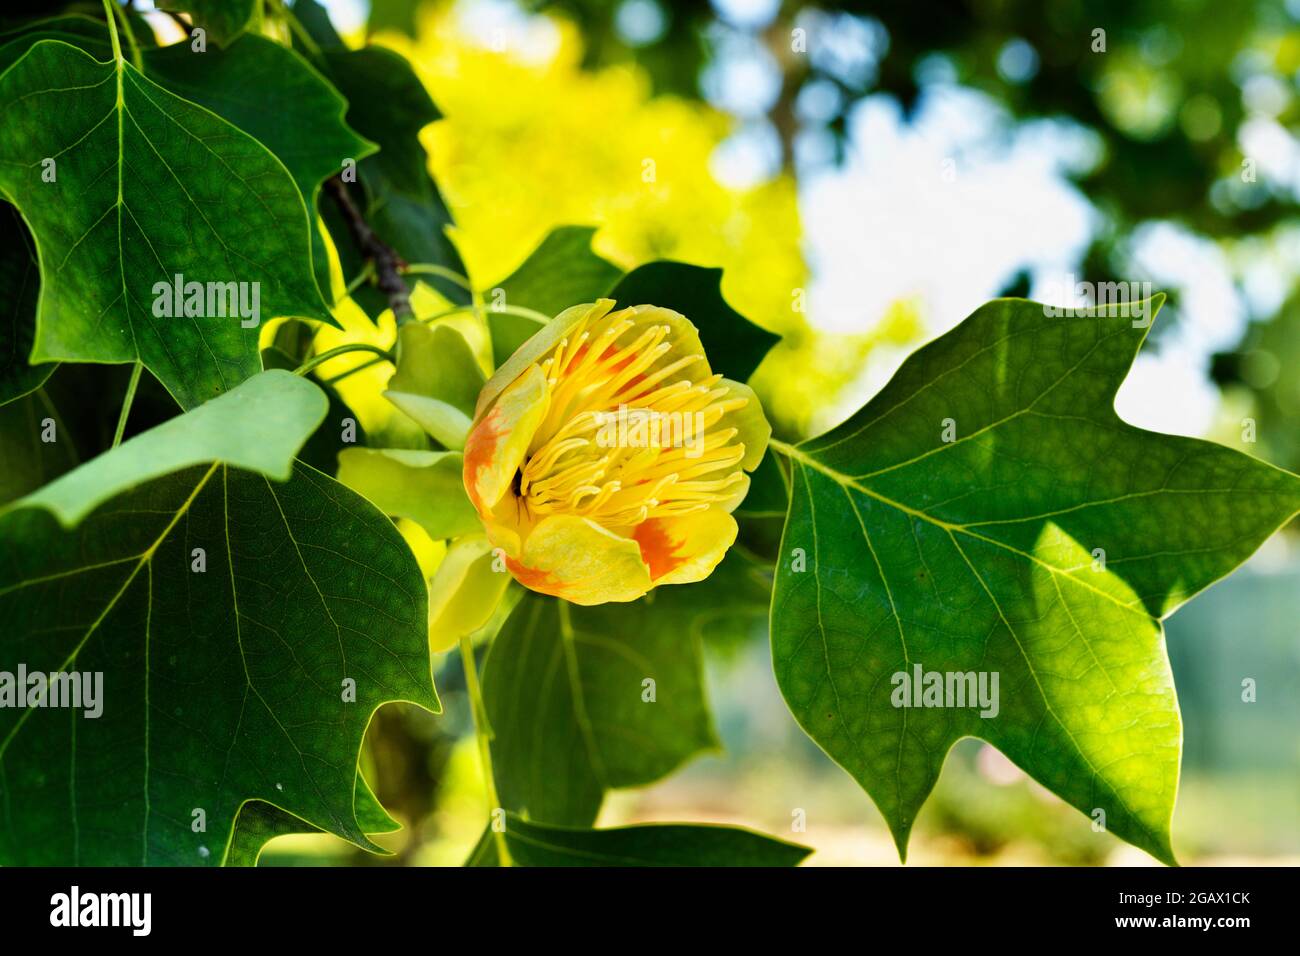 Detail von Tulpenbaum -liriodendron oder gelbe Pappel - mit gelb -orange Blume Stockfoto